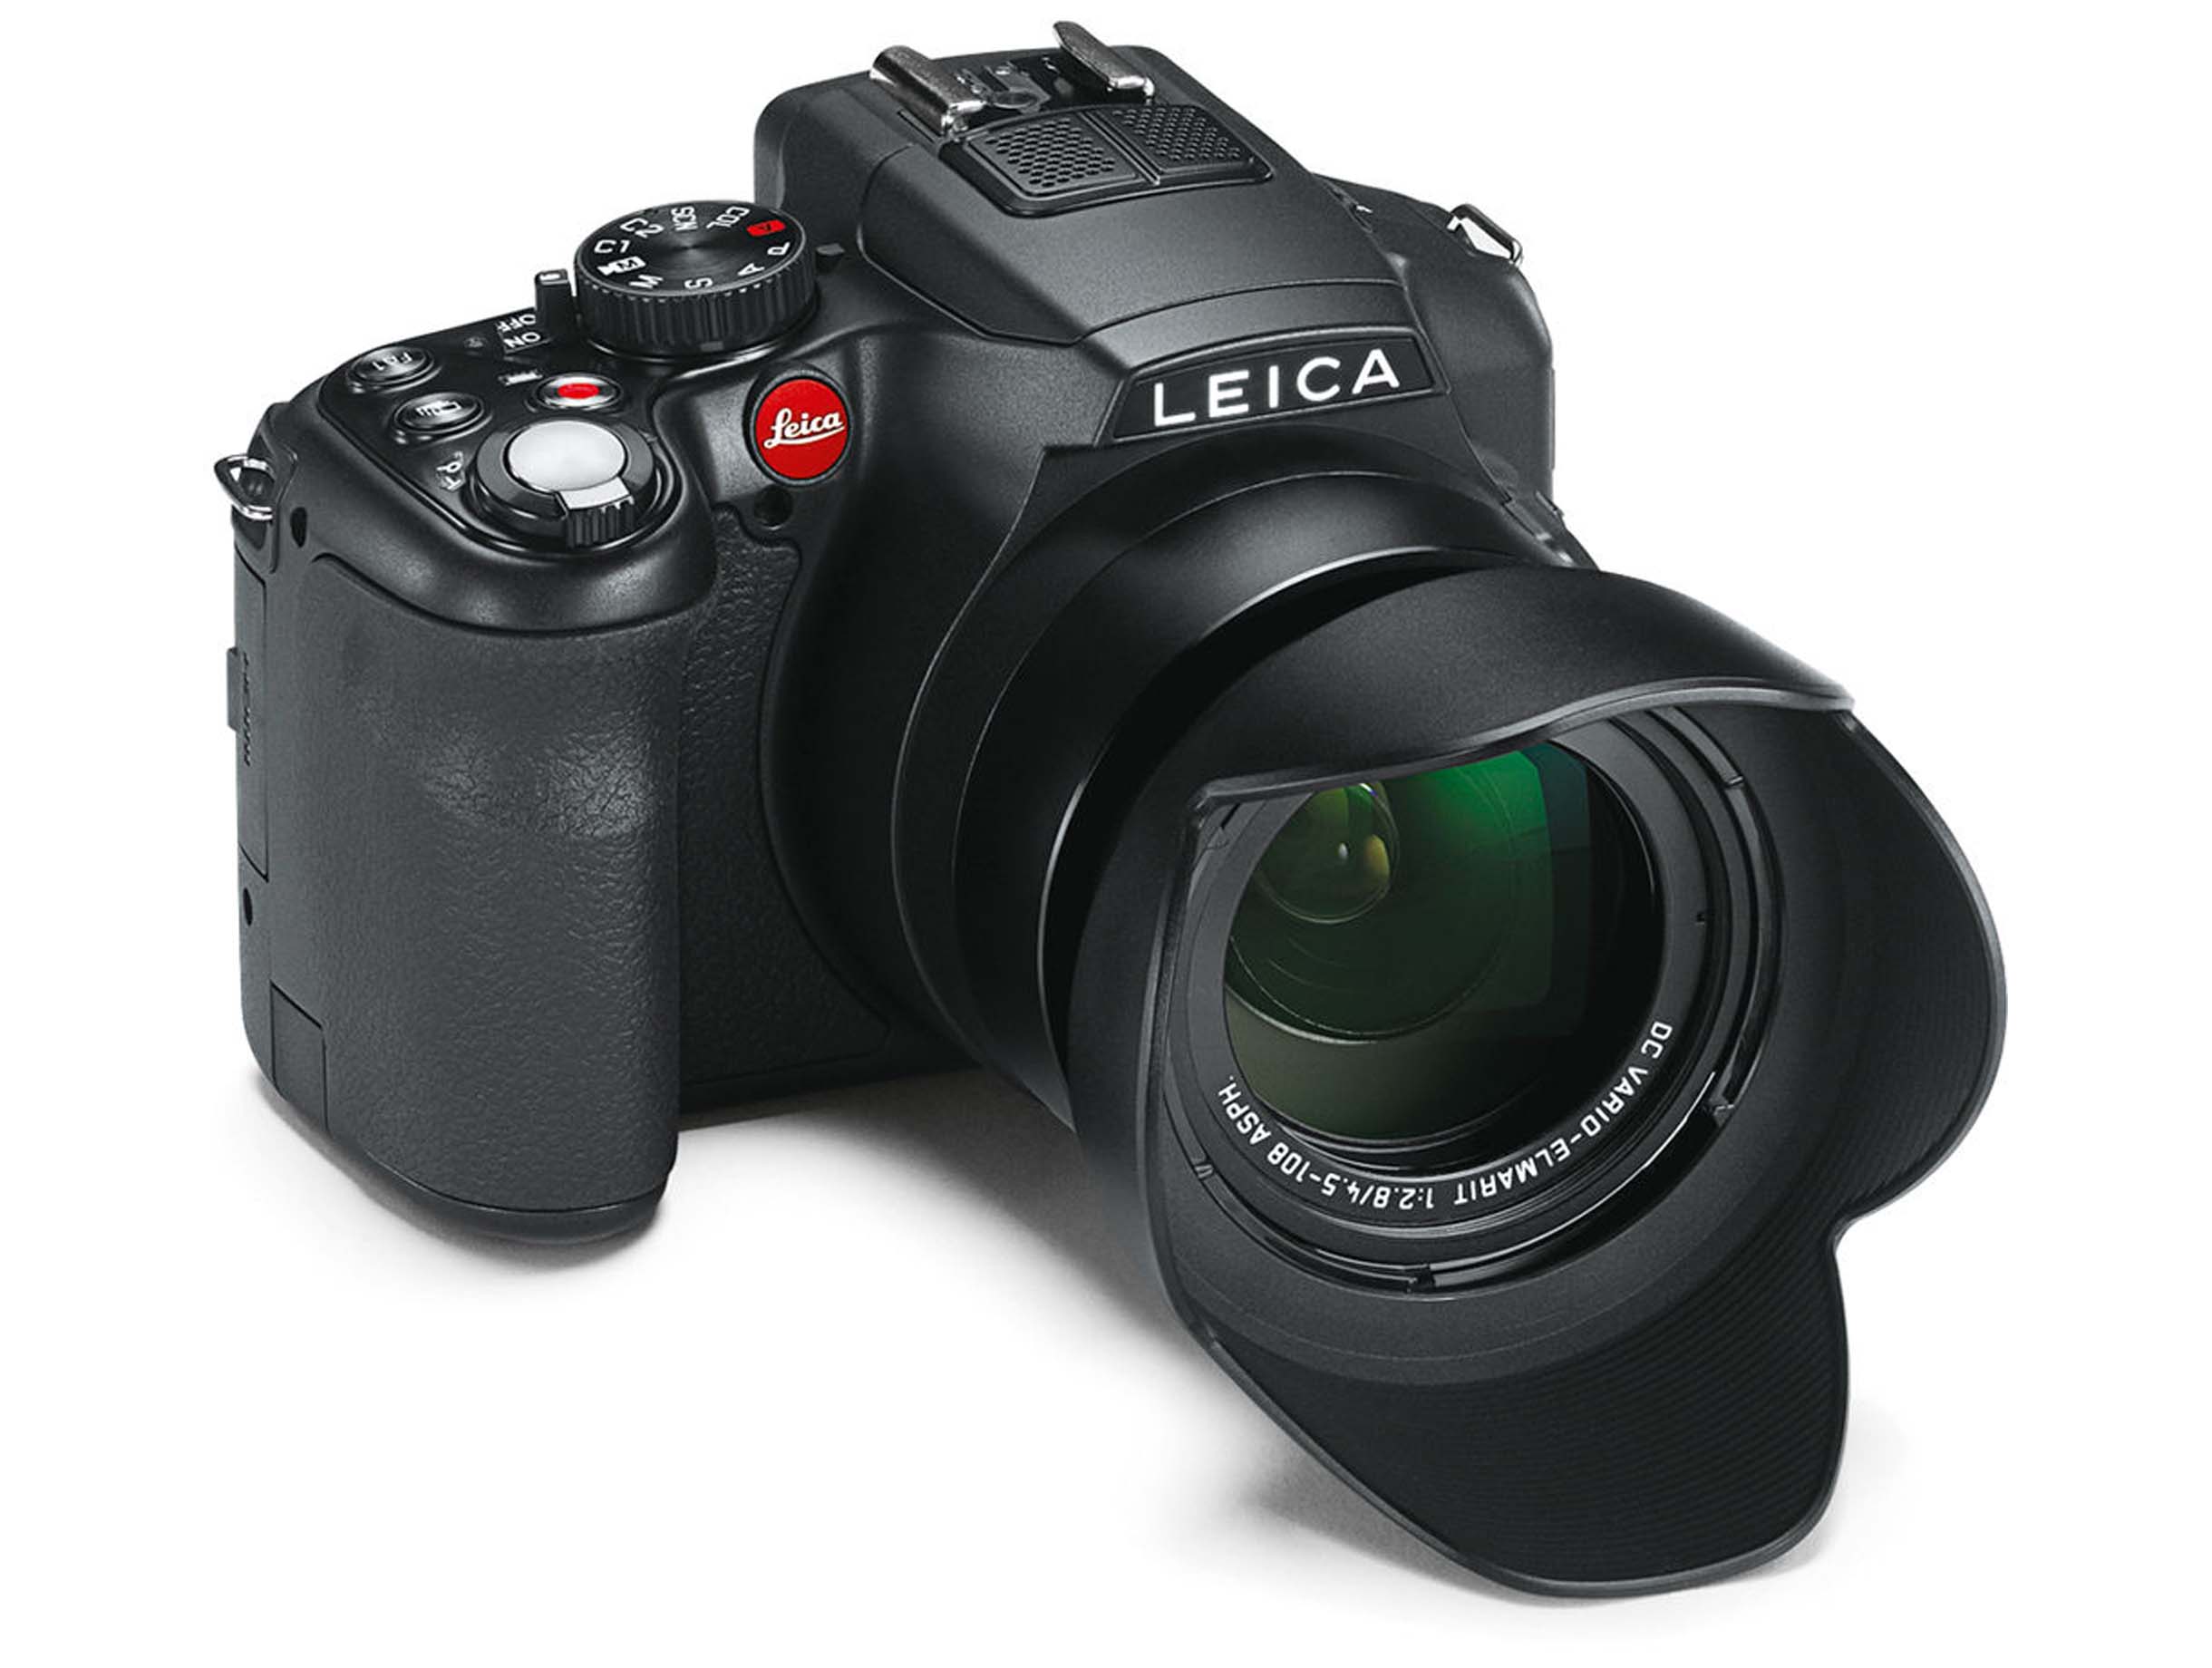 Leica V-Lux 4 Specs and Review - PXLMAG.com